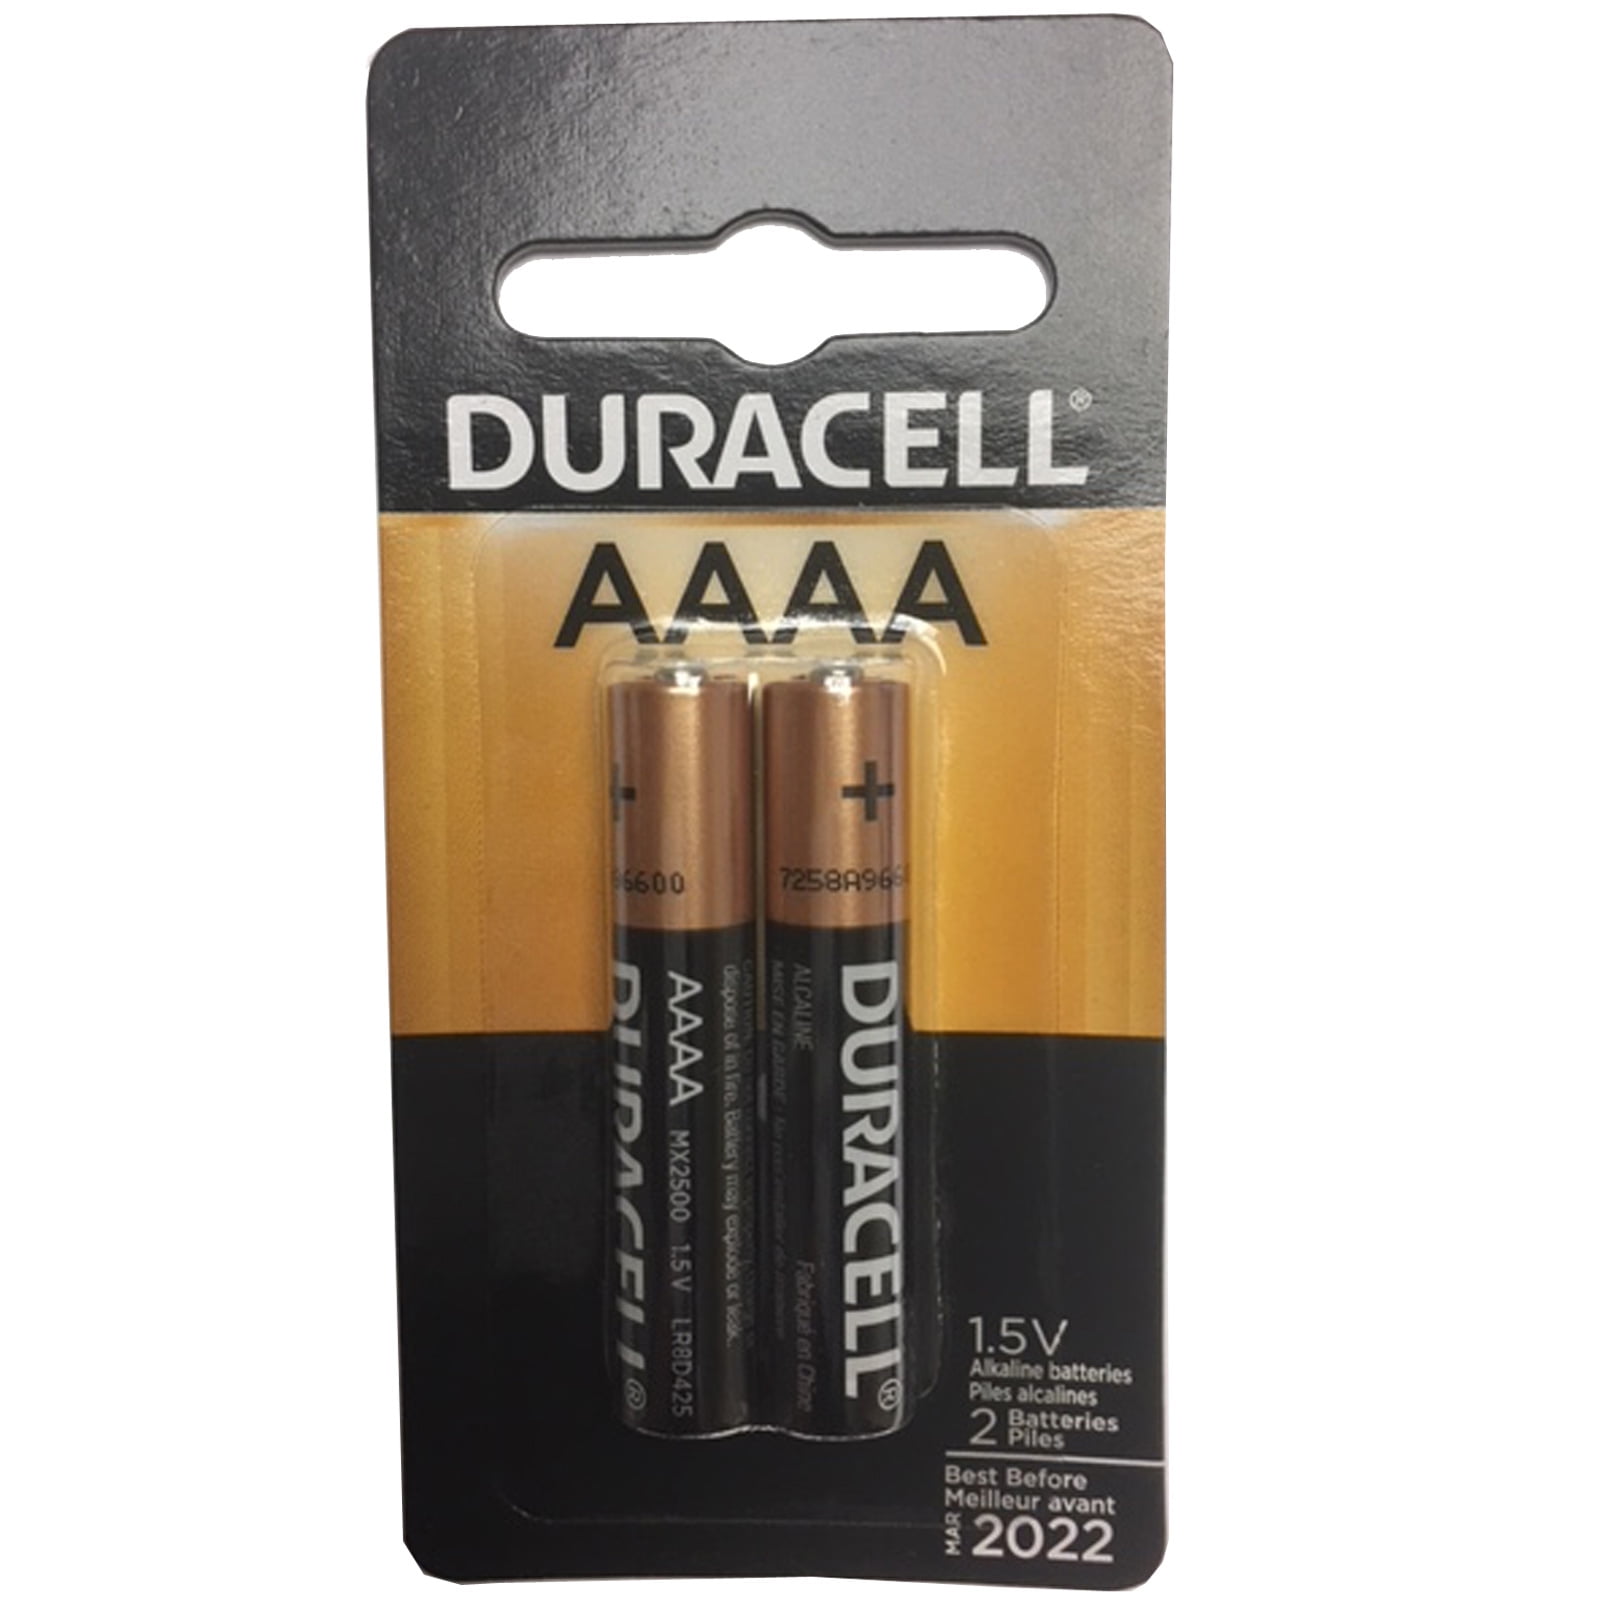 16 x Duracell  AAAA MN2500 MX2500 E96 LR61 LR8 D425 8 x 2er Batterien 